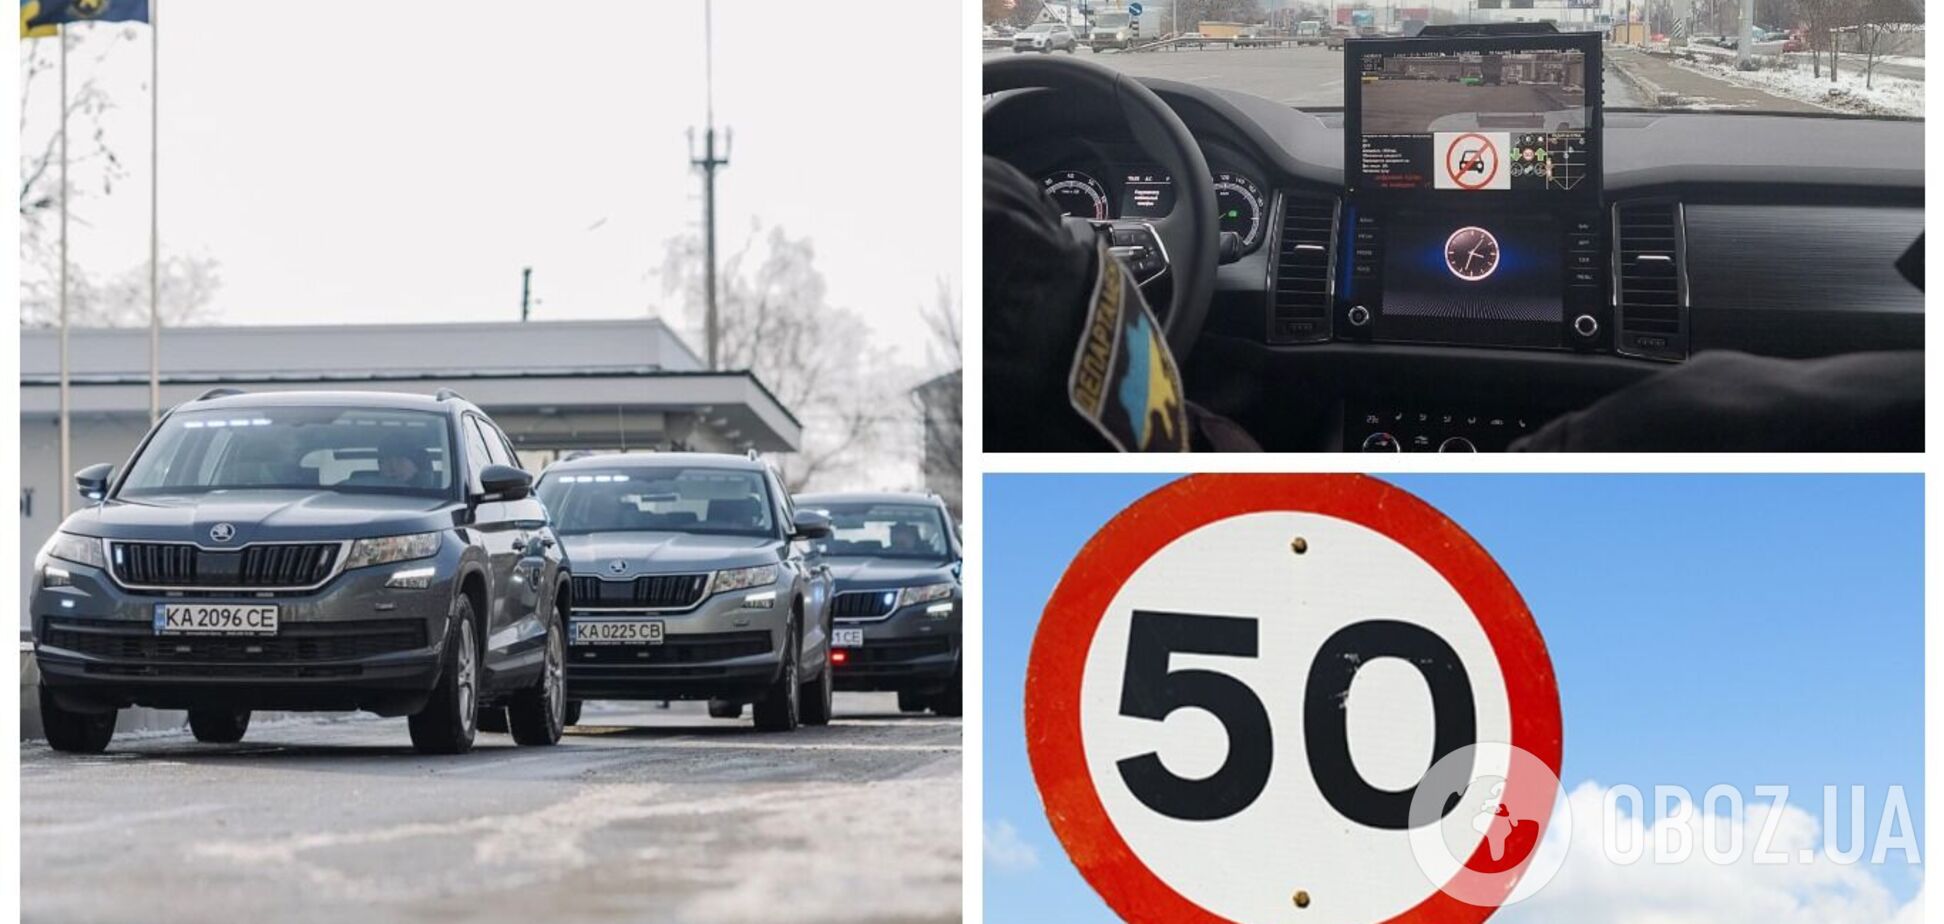 В Україні на дороги виїхали авто-'фантоми' поліції: як вони влаштовані та які порушення фіксуватимуть. Відео